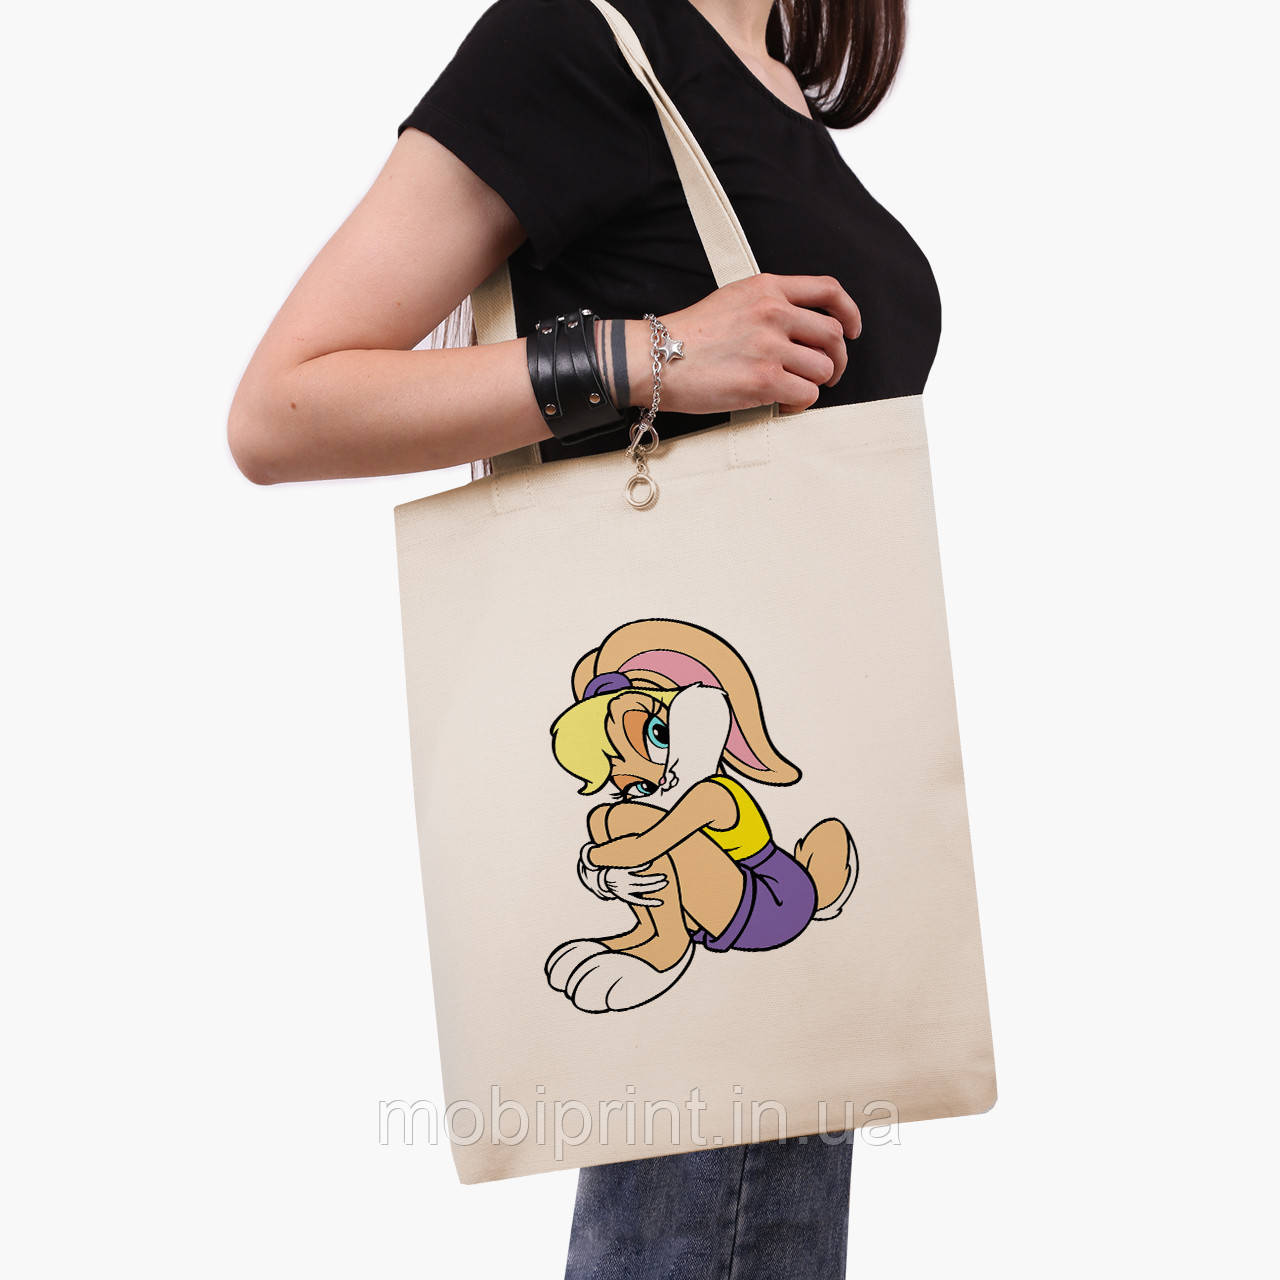 Еко сумка Лола Банні Луні Тюнз (Lola Bunny Looney Tunes) (9227-2885-BG) бежева з широким дном